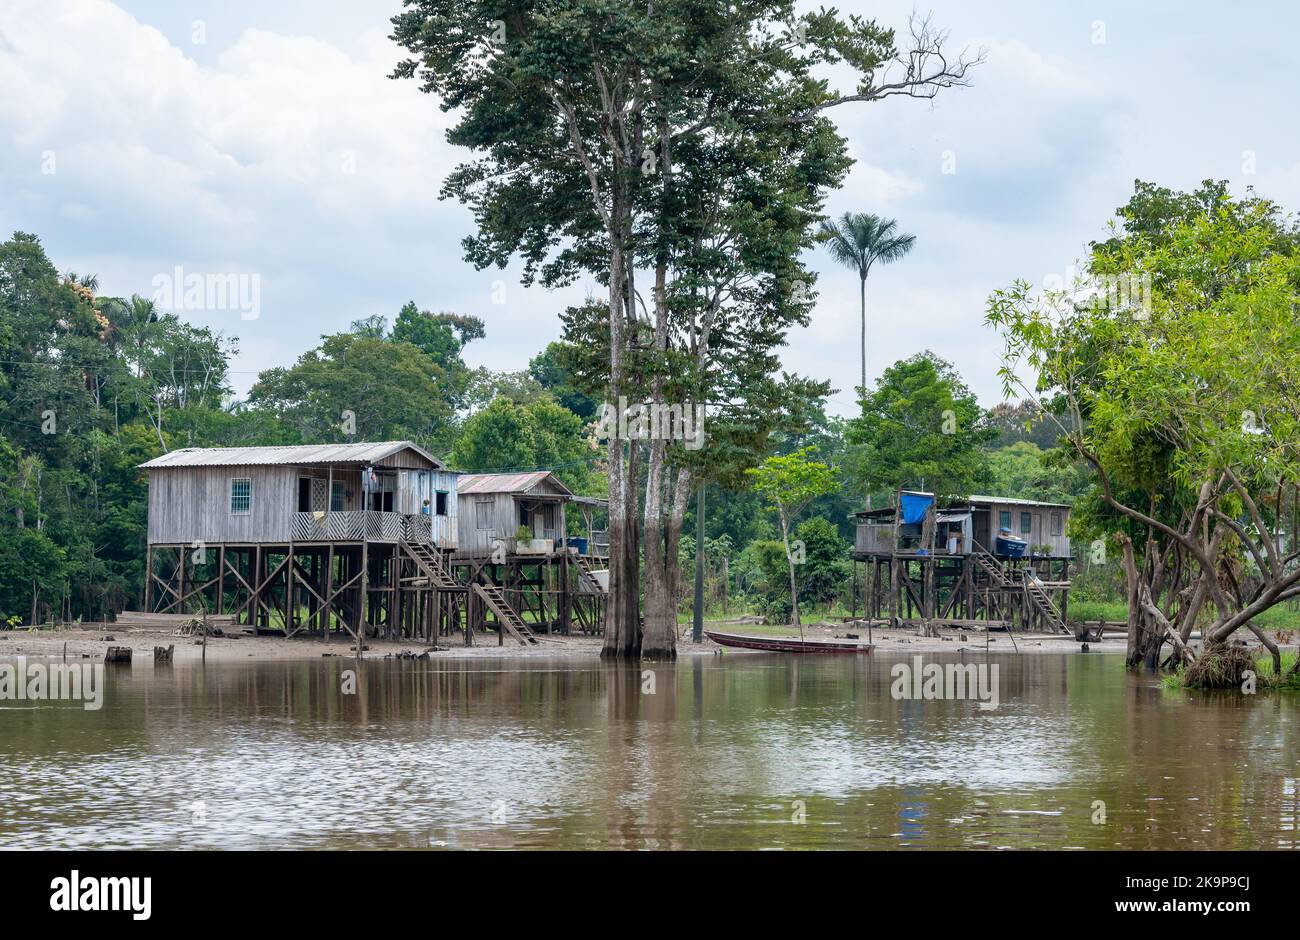 Dans le village le long de la rivière Amazone, les maisons sont construites sur de hauts postes pour éviter les inondations en saison humide. Amazonas, Brésil Banque D'Images